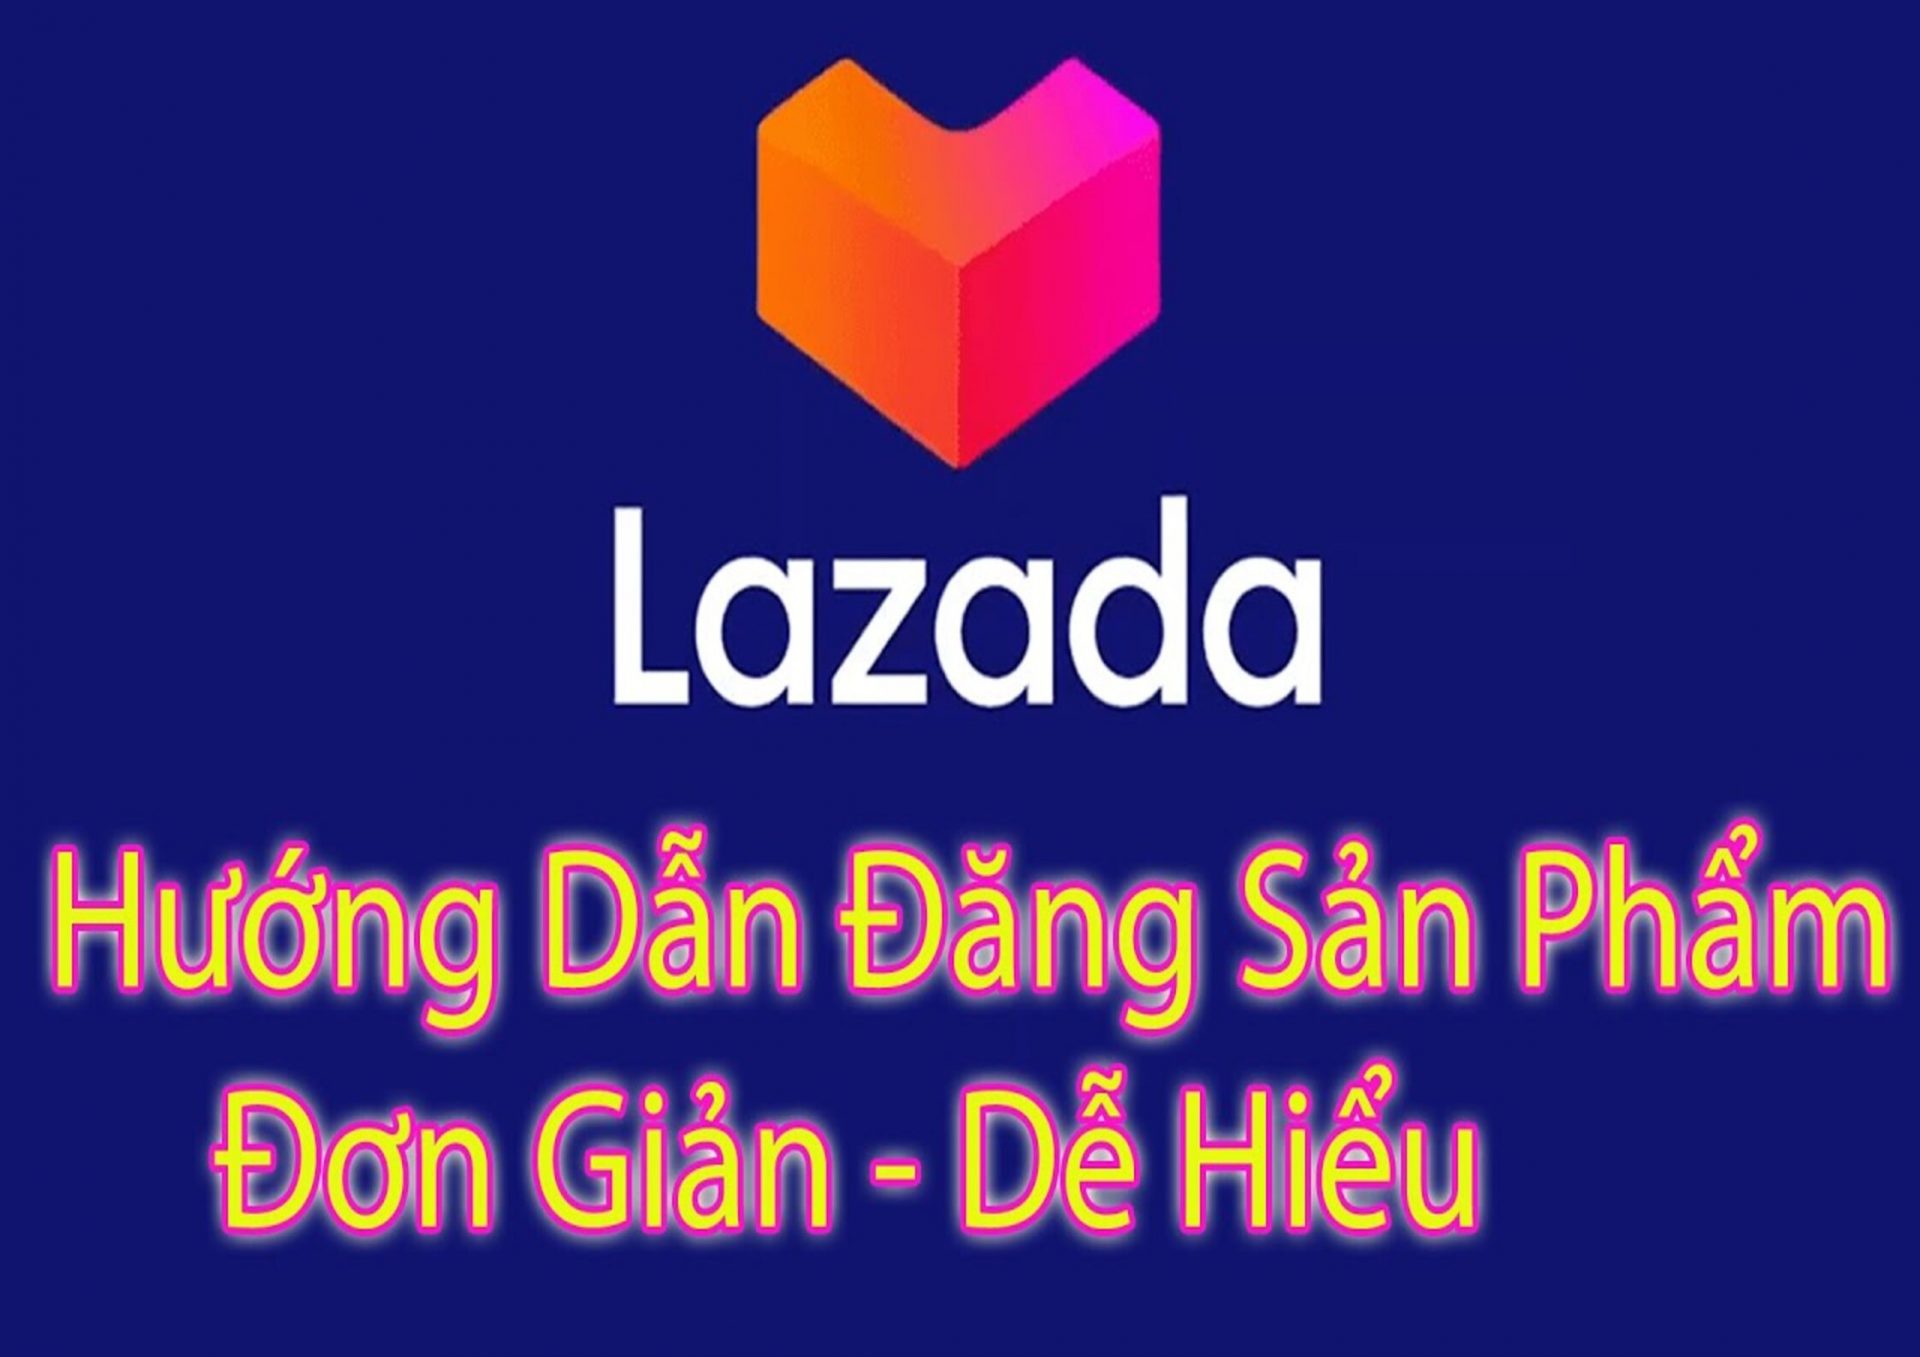 Hướng dẫn đăng sản phẩm lên Lazada cho người mới